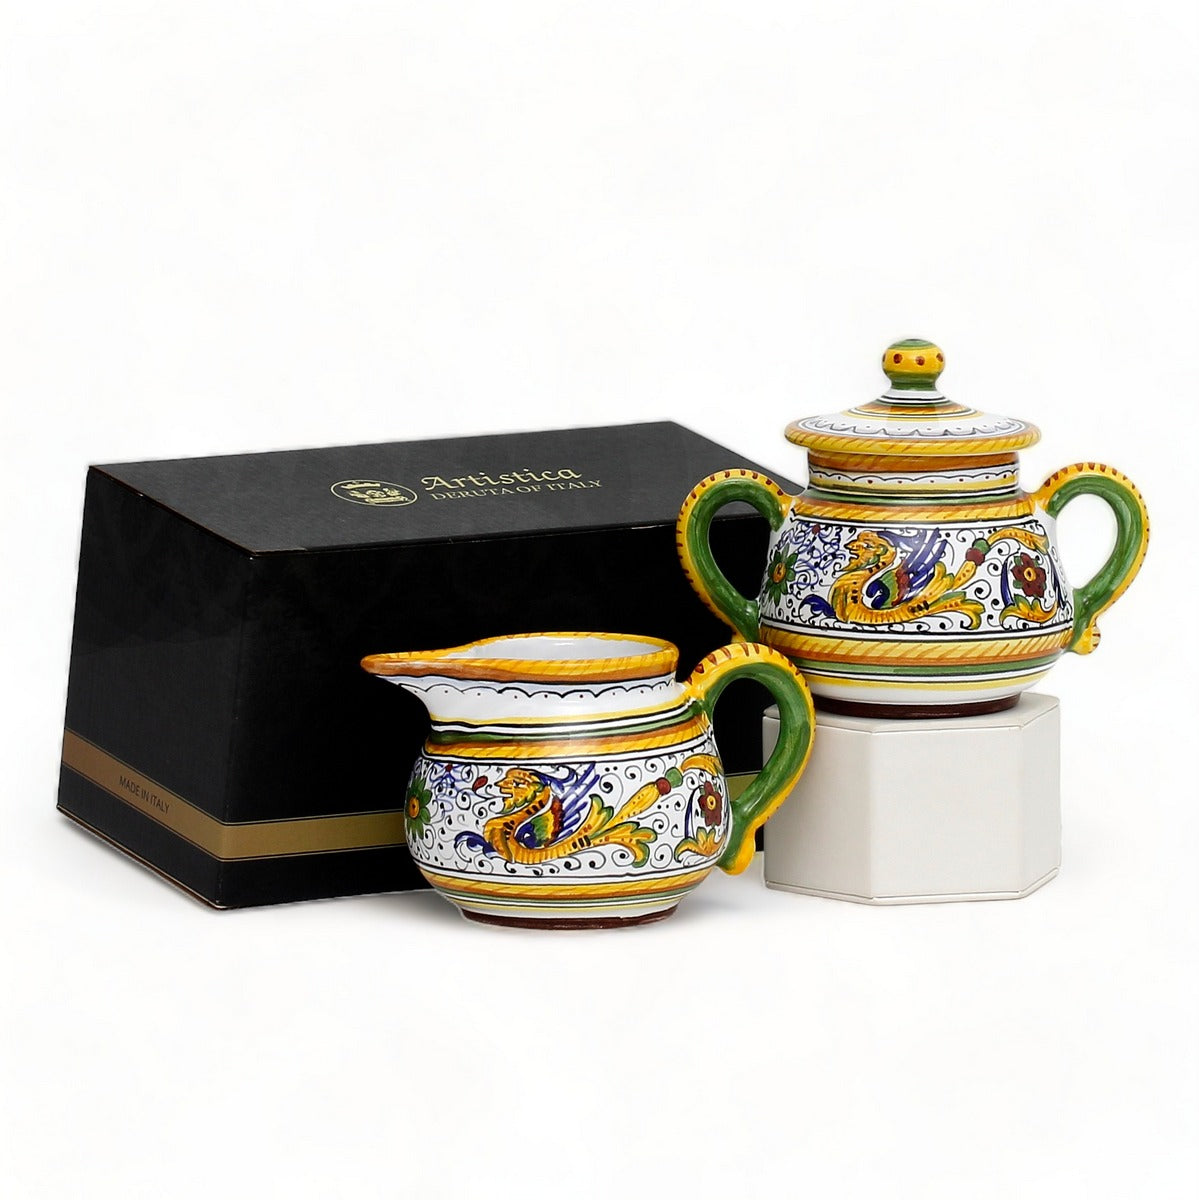 GIFT BOX: With authentic Deruta hand painted ceramic - Cream &amp; Sugar Raffaellesco design